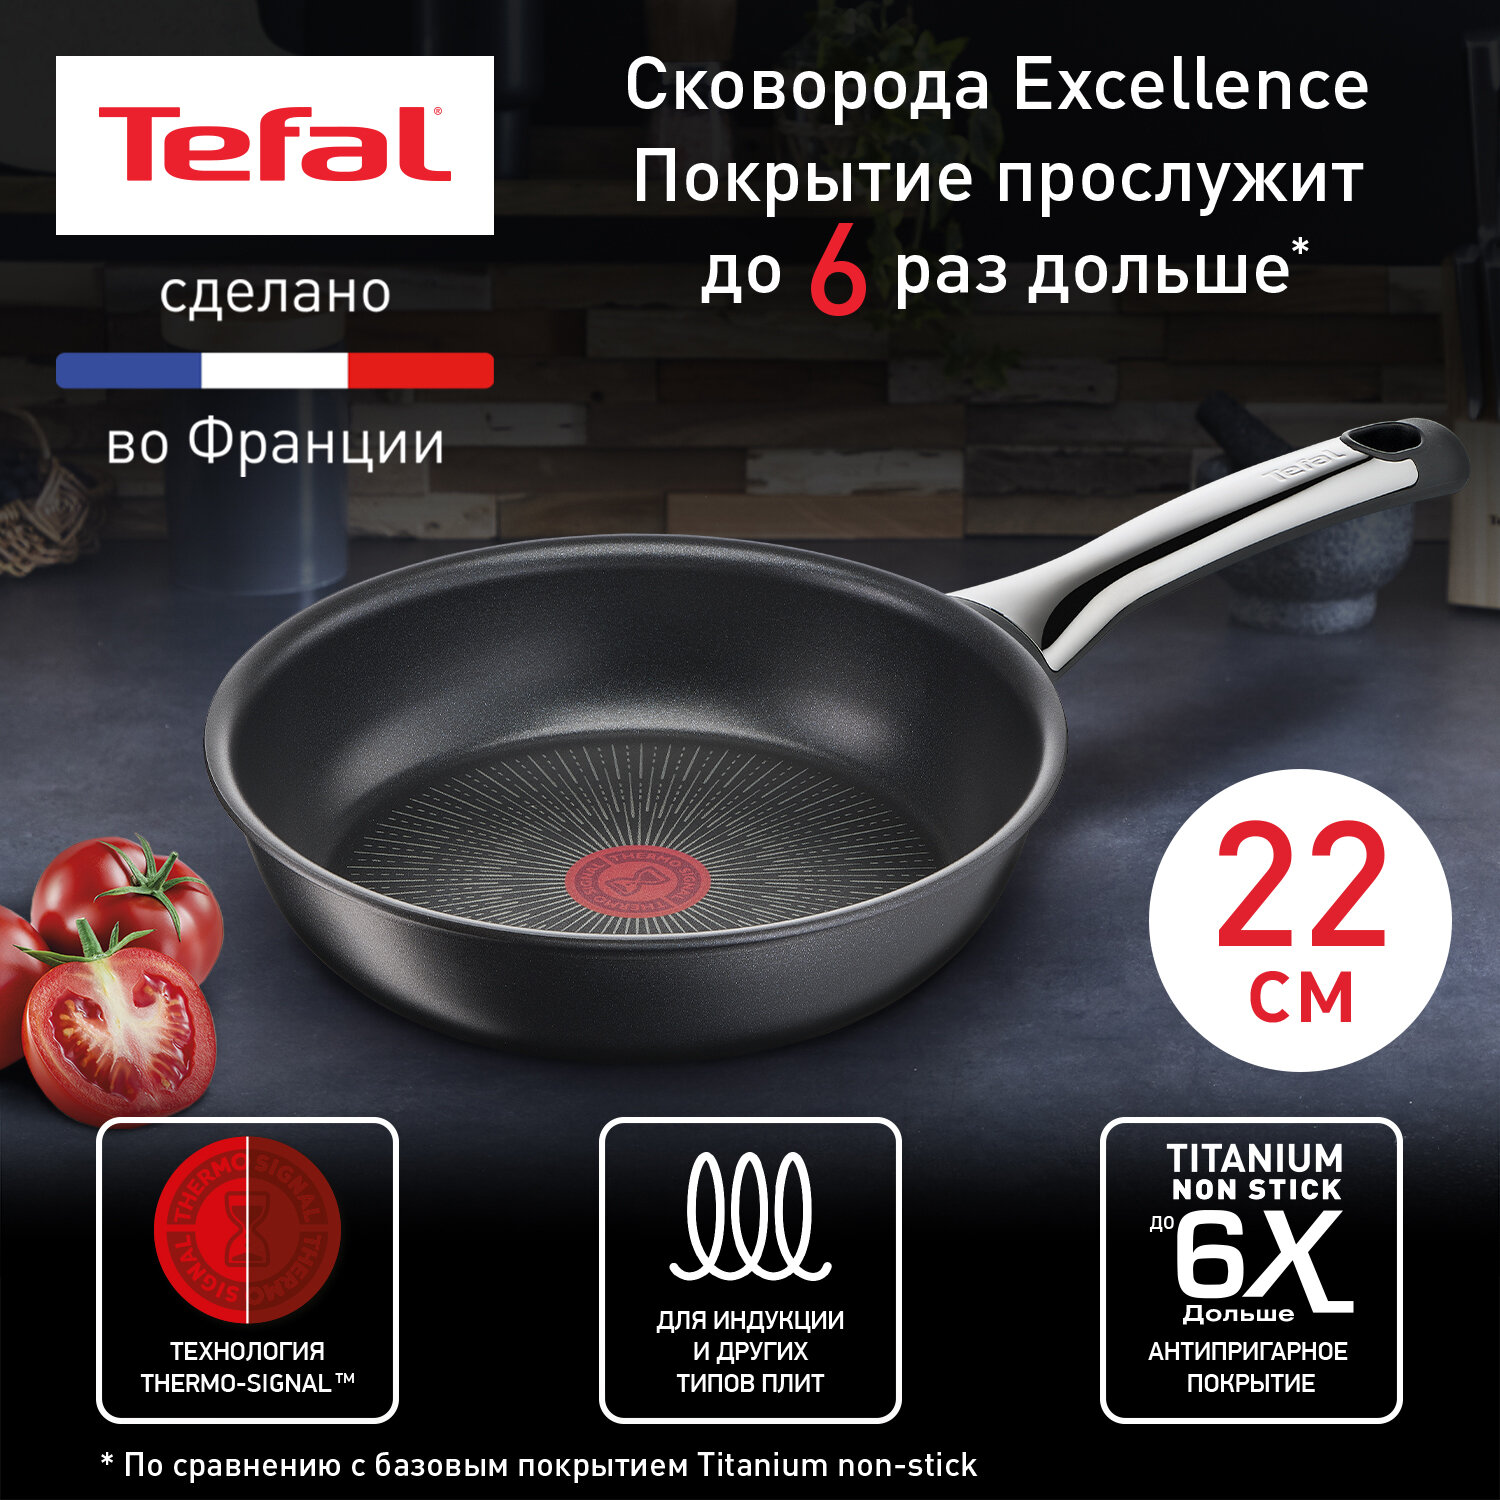 Сковорода Tefal Excellence 22 см G2690372